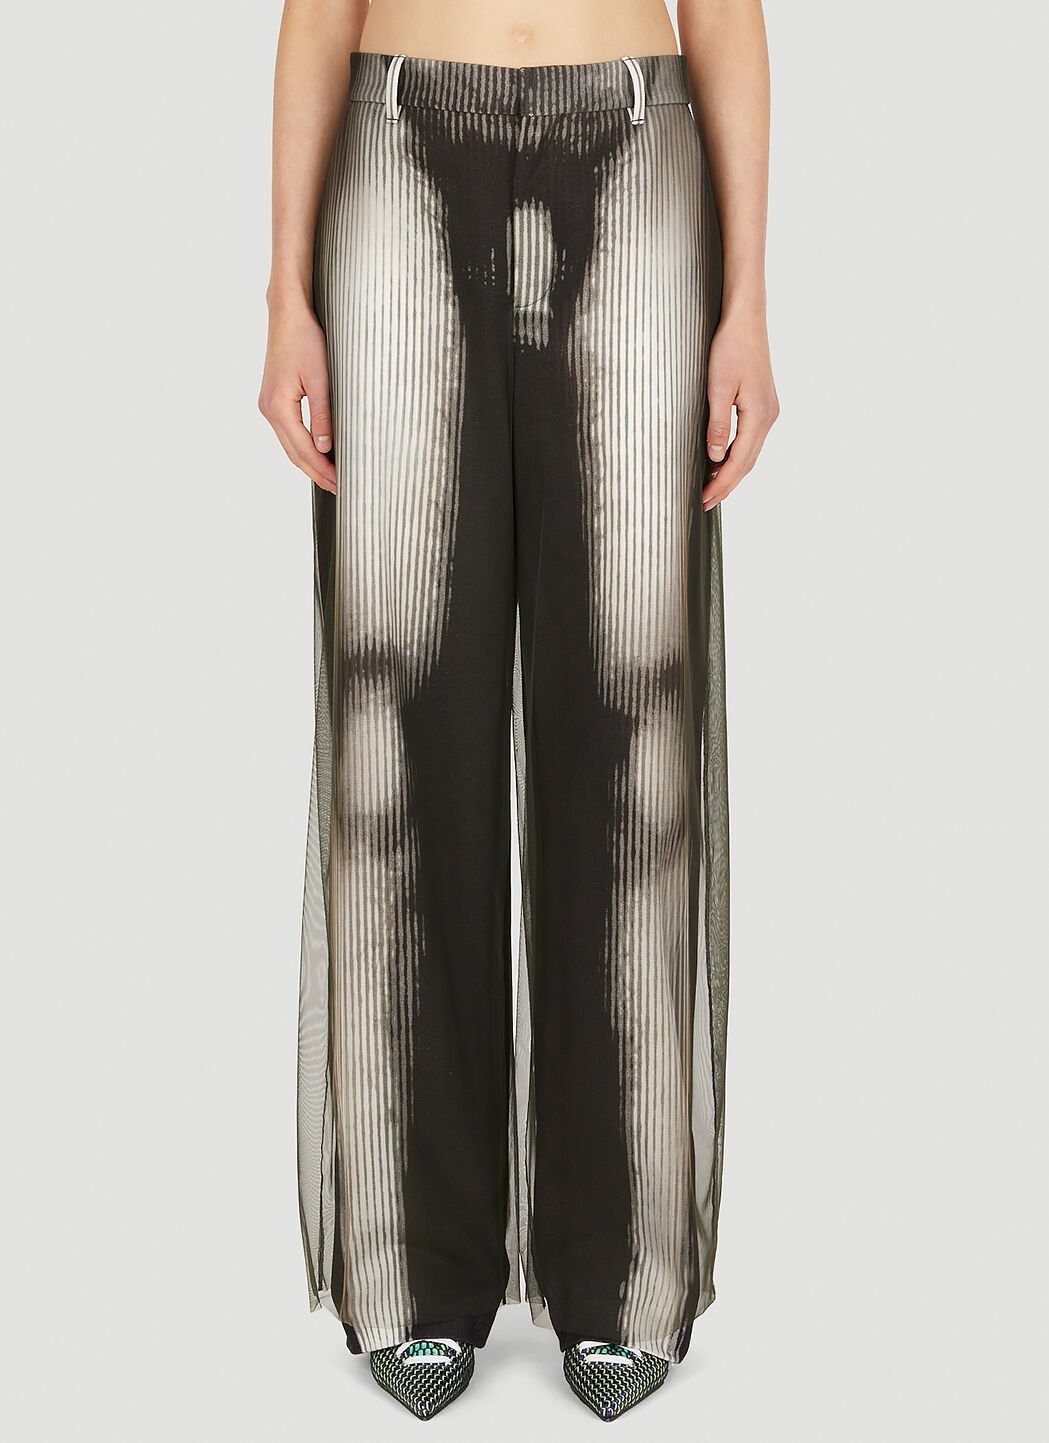 Y/Project x Jean Paul Gaultier Body Morph Pants in Black | LN-CC®